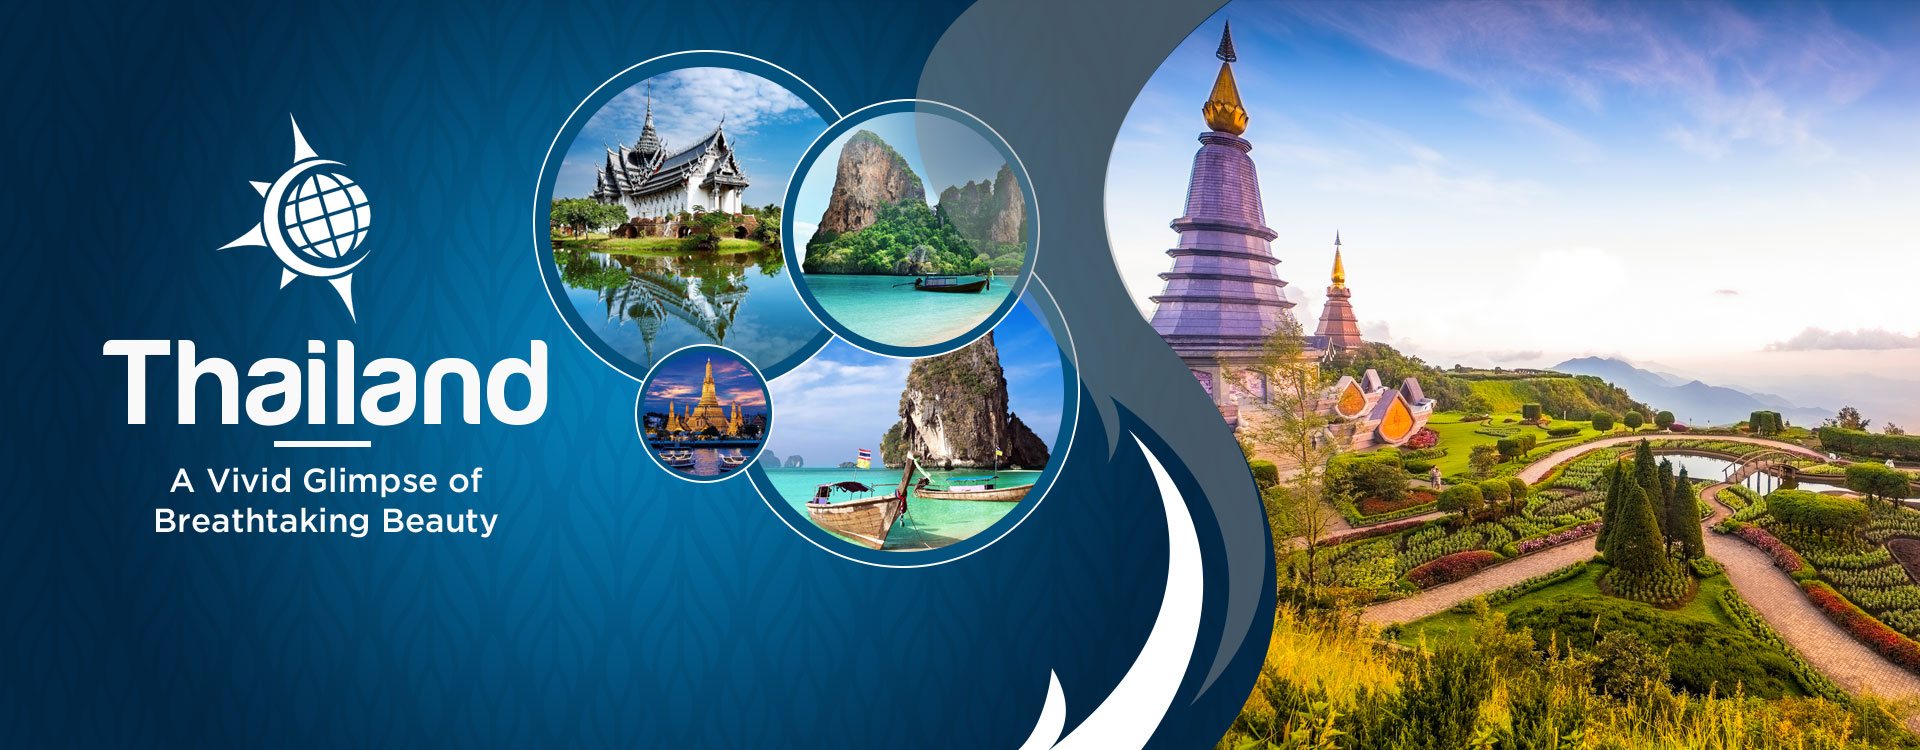 Tour Thailand With Disha Tours & Travel Siliguri